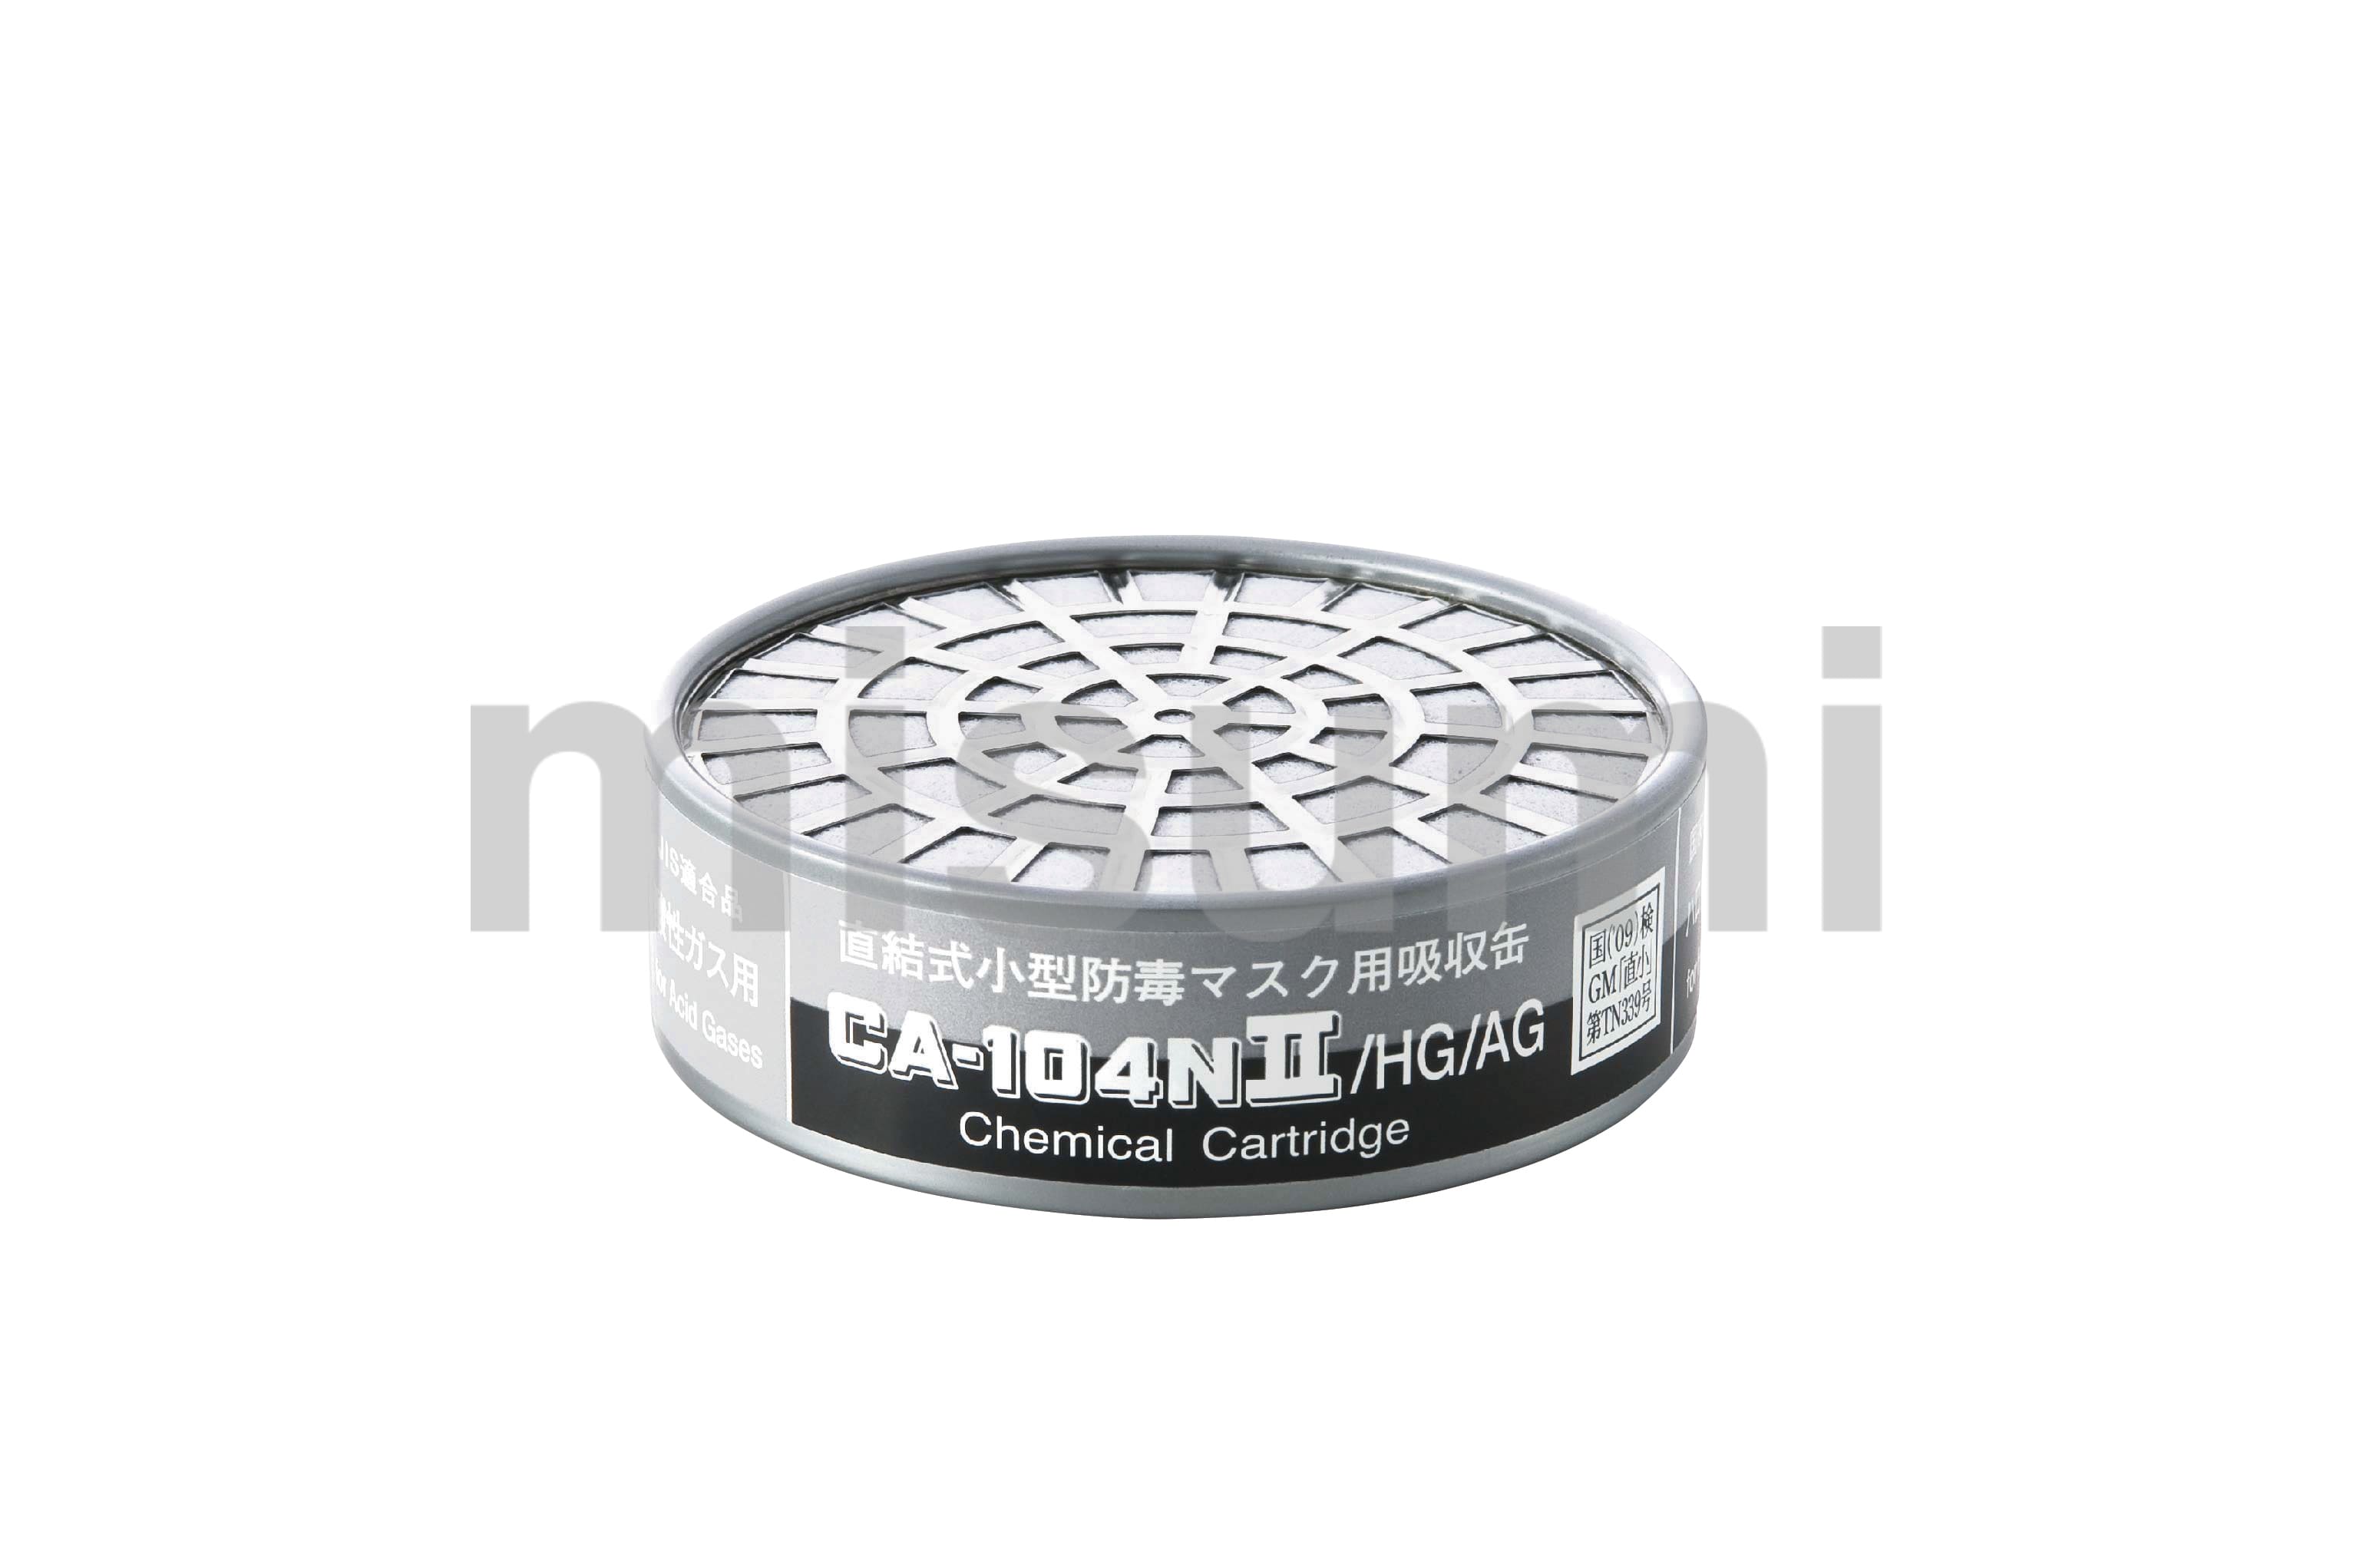 CA104N2OV 直結式小型防毒マスク 吸収缶 重松製作所 ミスミ 388-0796